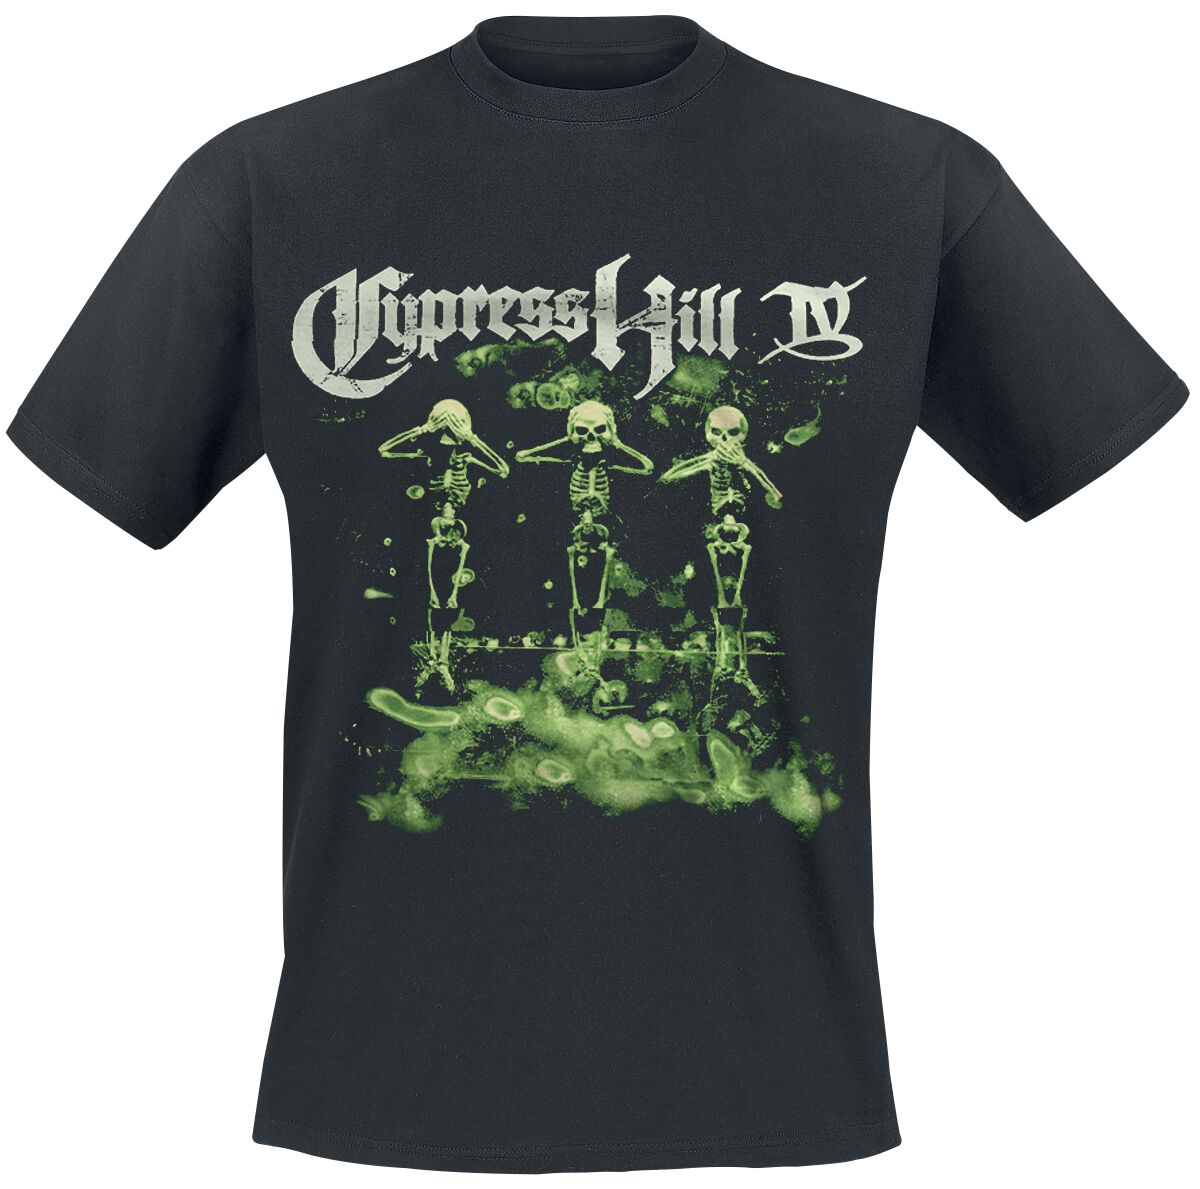 Cypress Hill T-Shirt - IV Album - M bis 5XL - für Männer - Größe 5XL - schwarz  - Lizenziertes Merchandise!